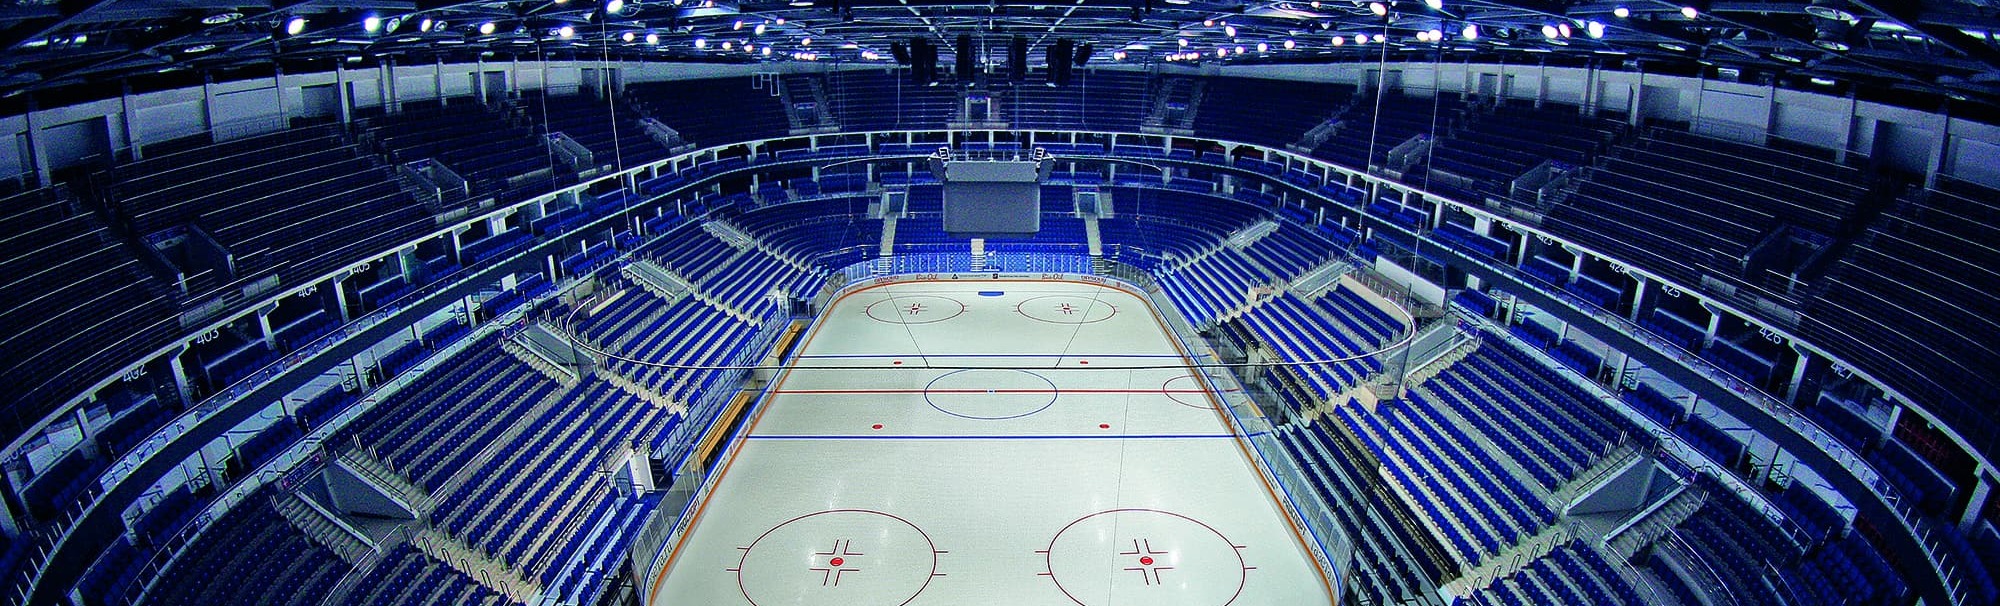 Федерация хоккея России еще не решила, сколько зрителей будет на Кубке Первого канала